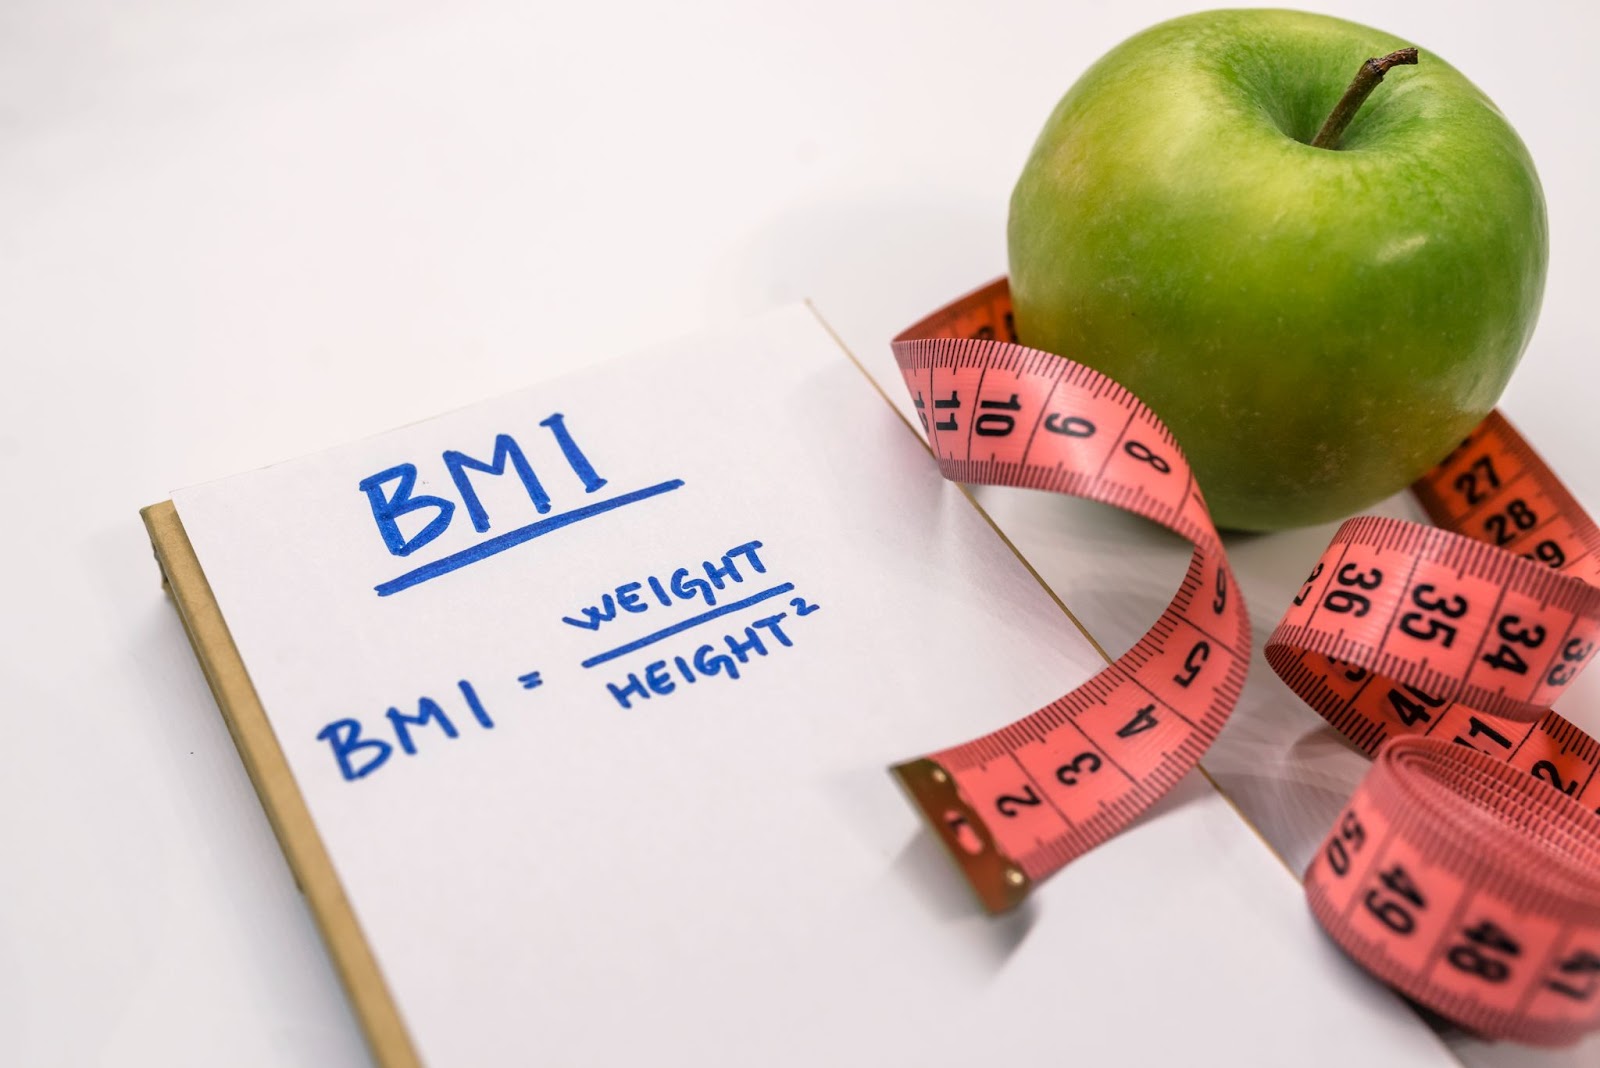 BMI-formula-apple-measure-tape